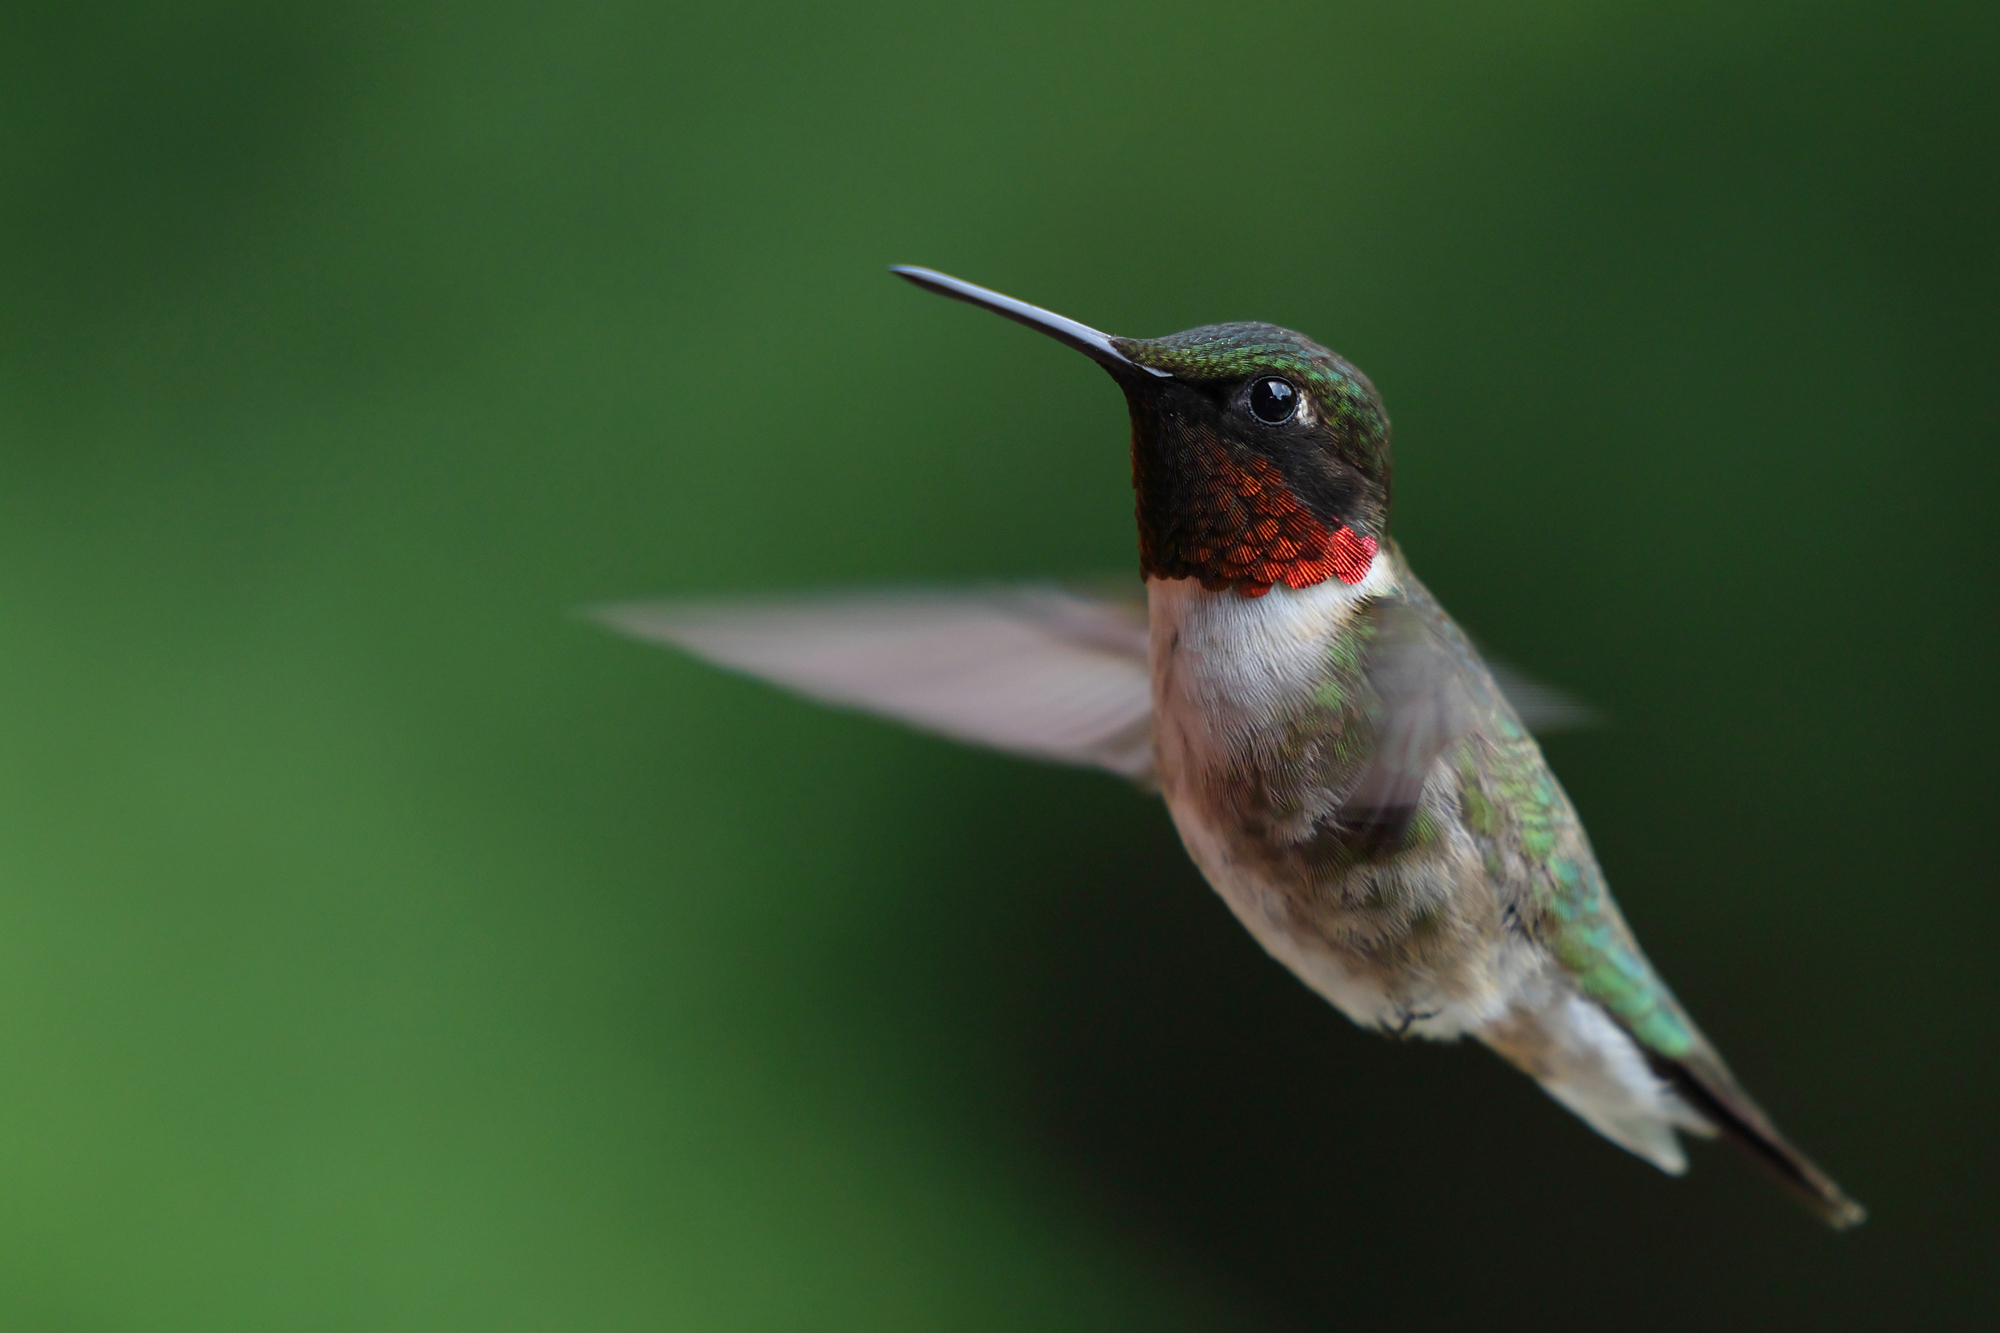 close up of a hummingbird